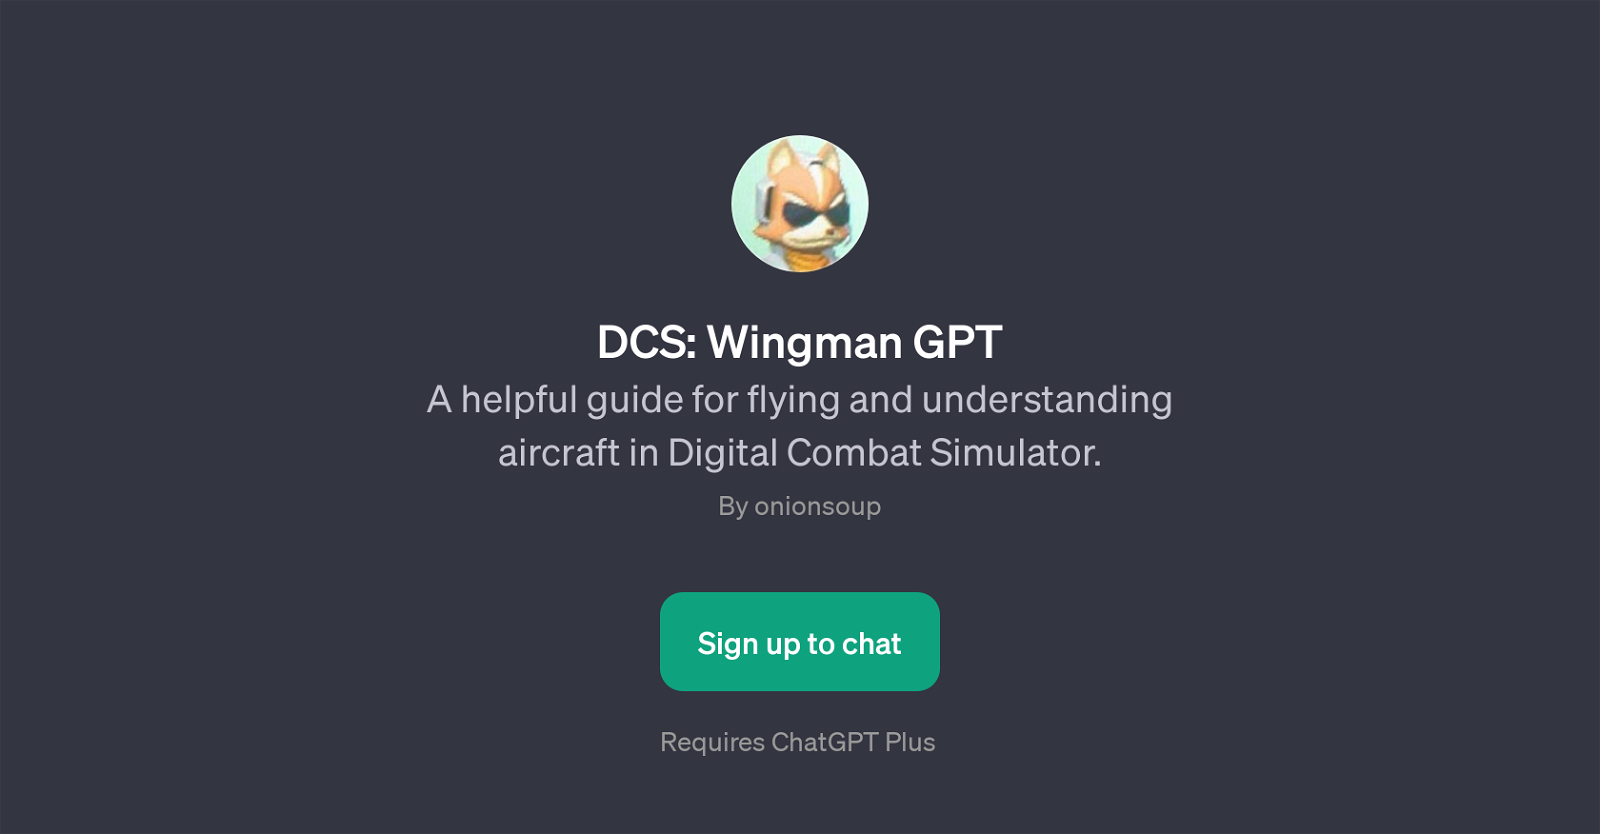 DCS: Wingman GPT website